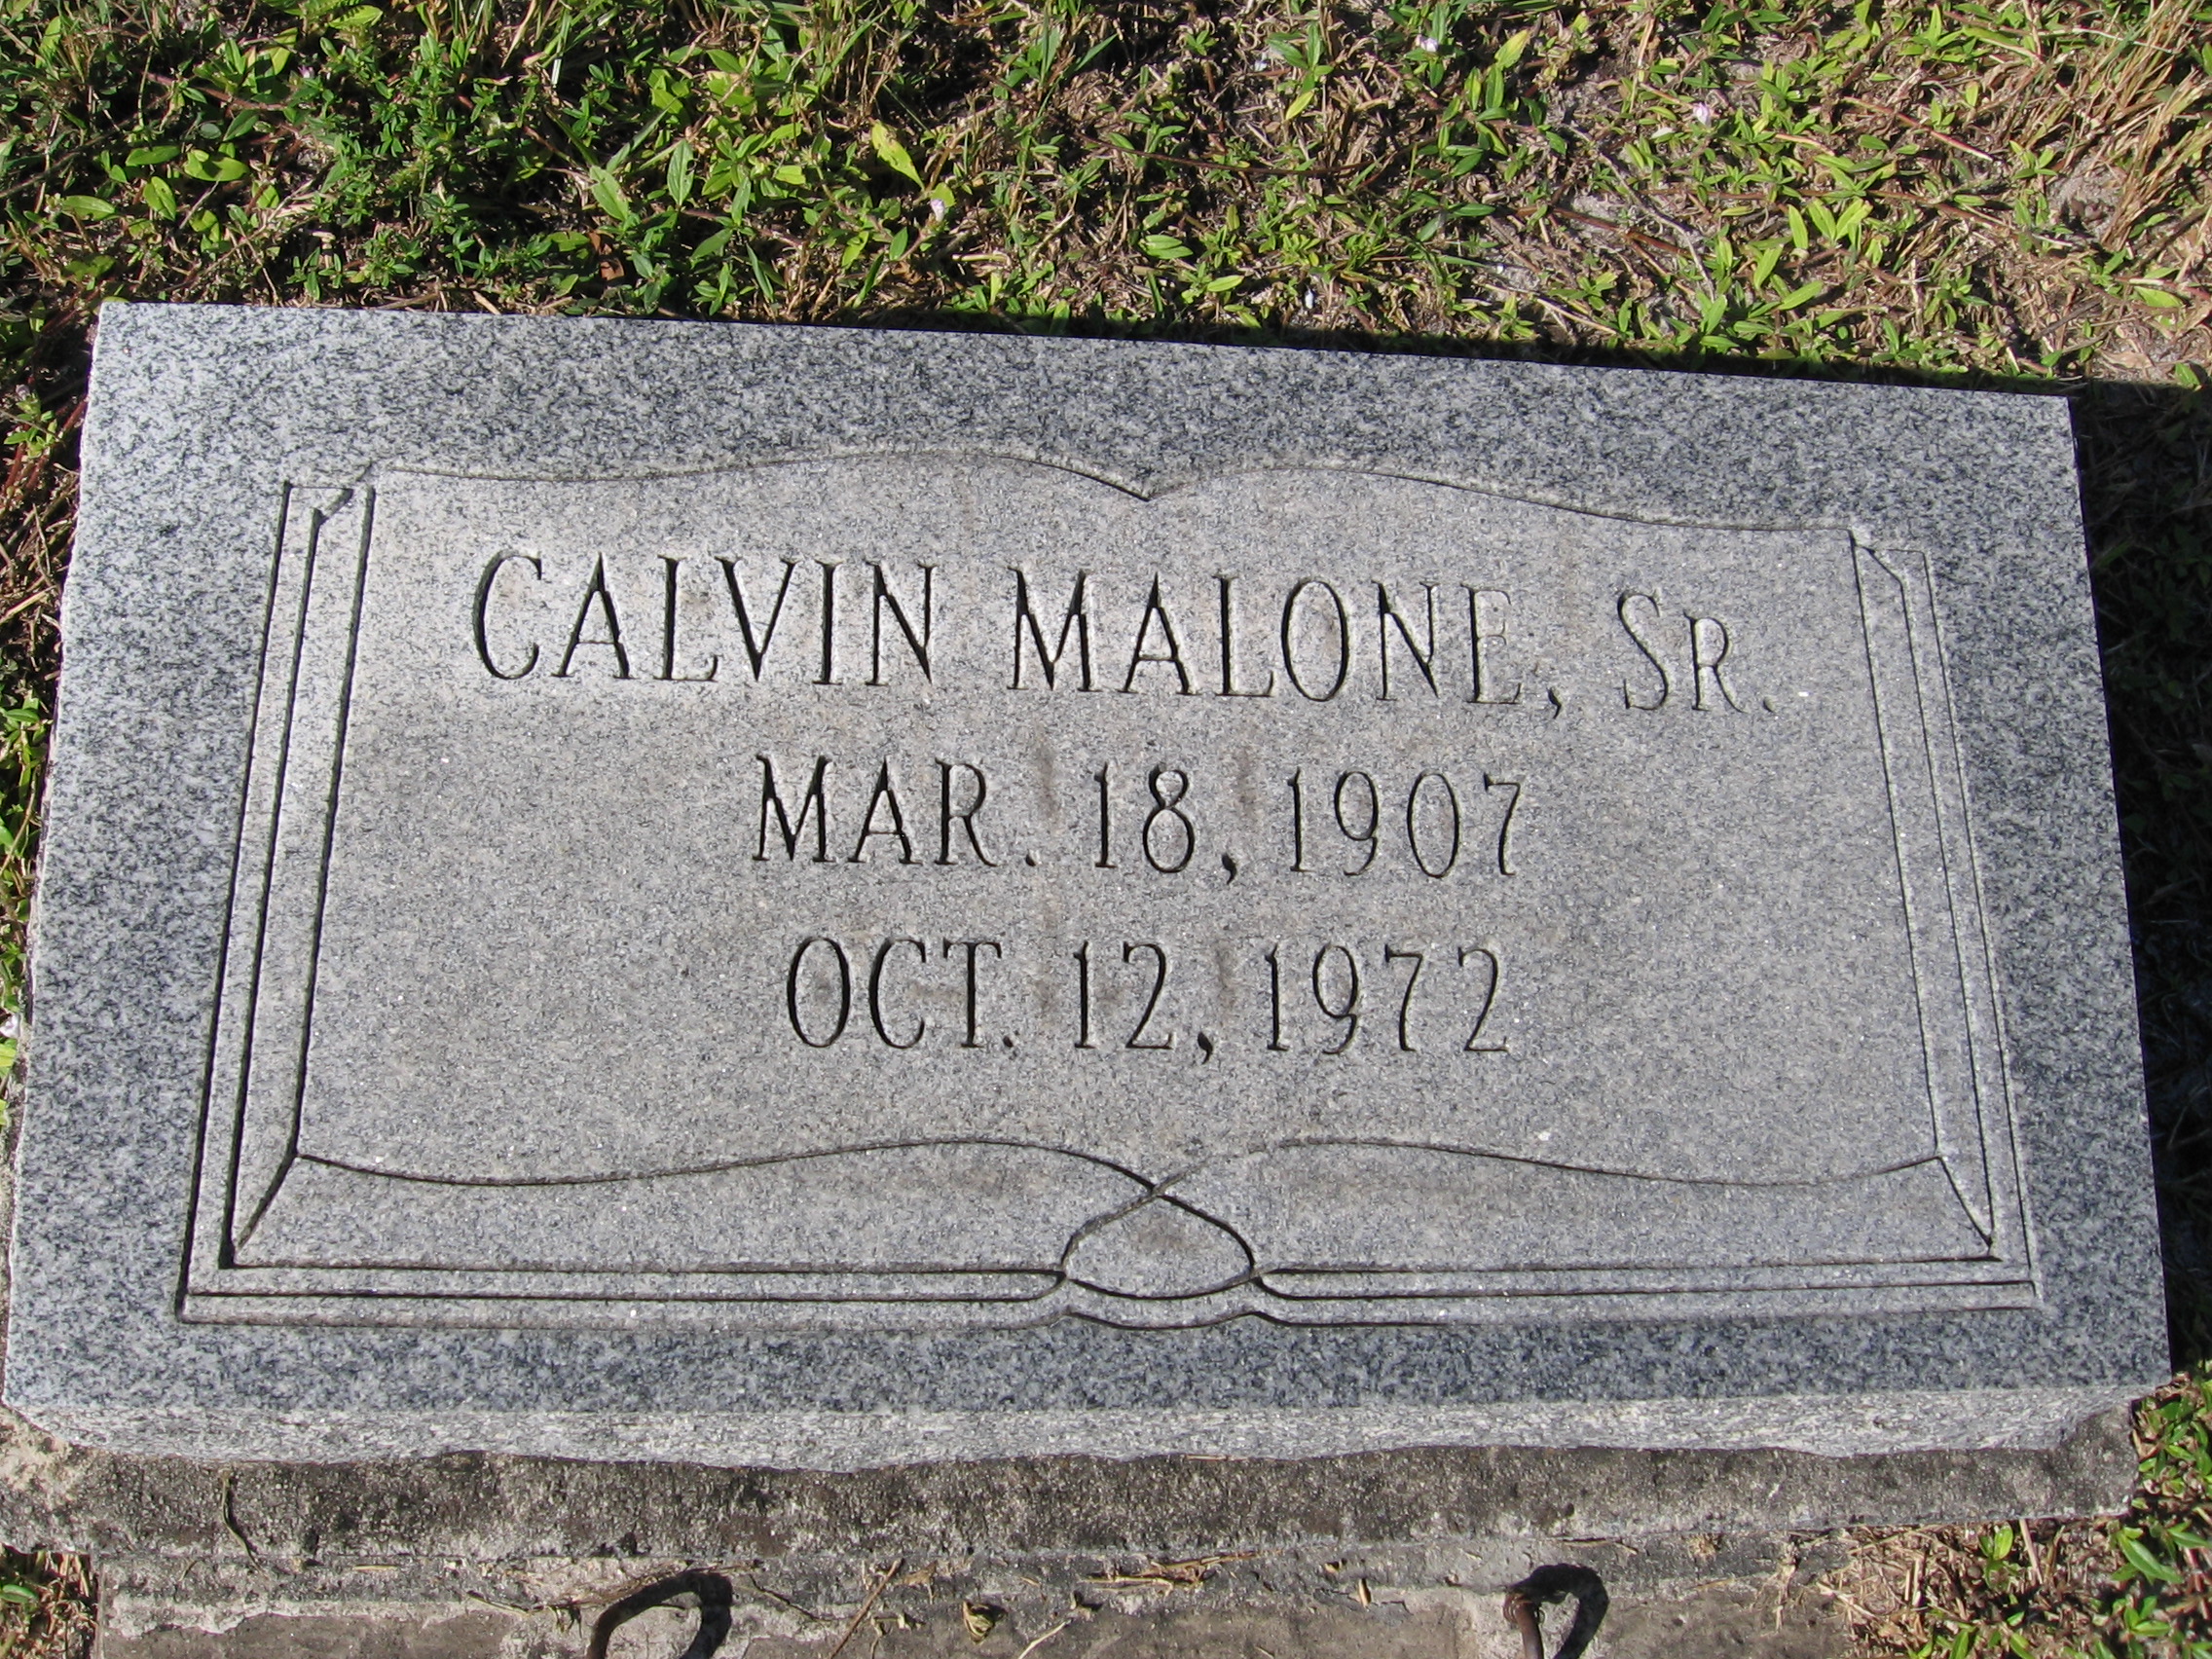 Calvin Malone, Sr